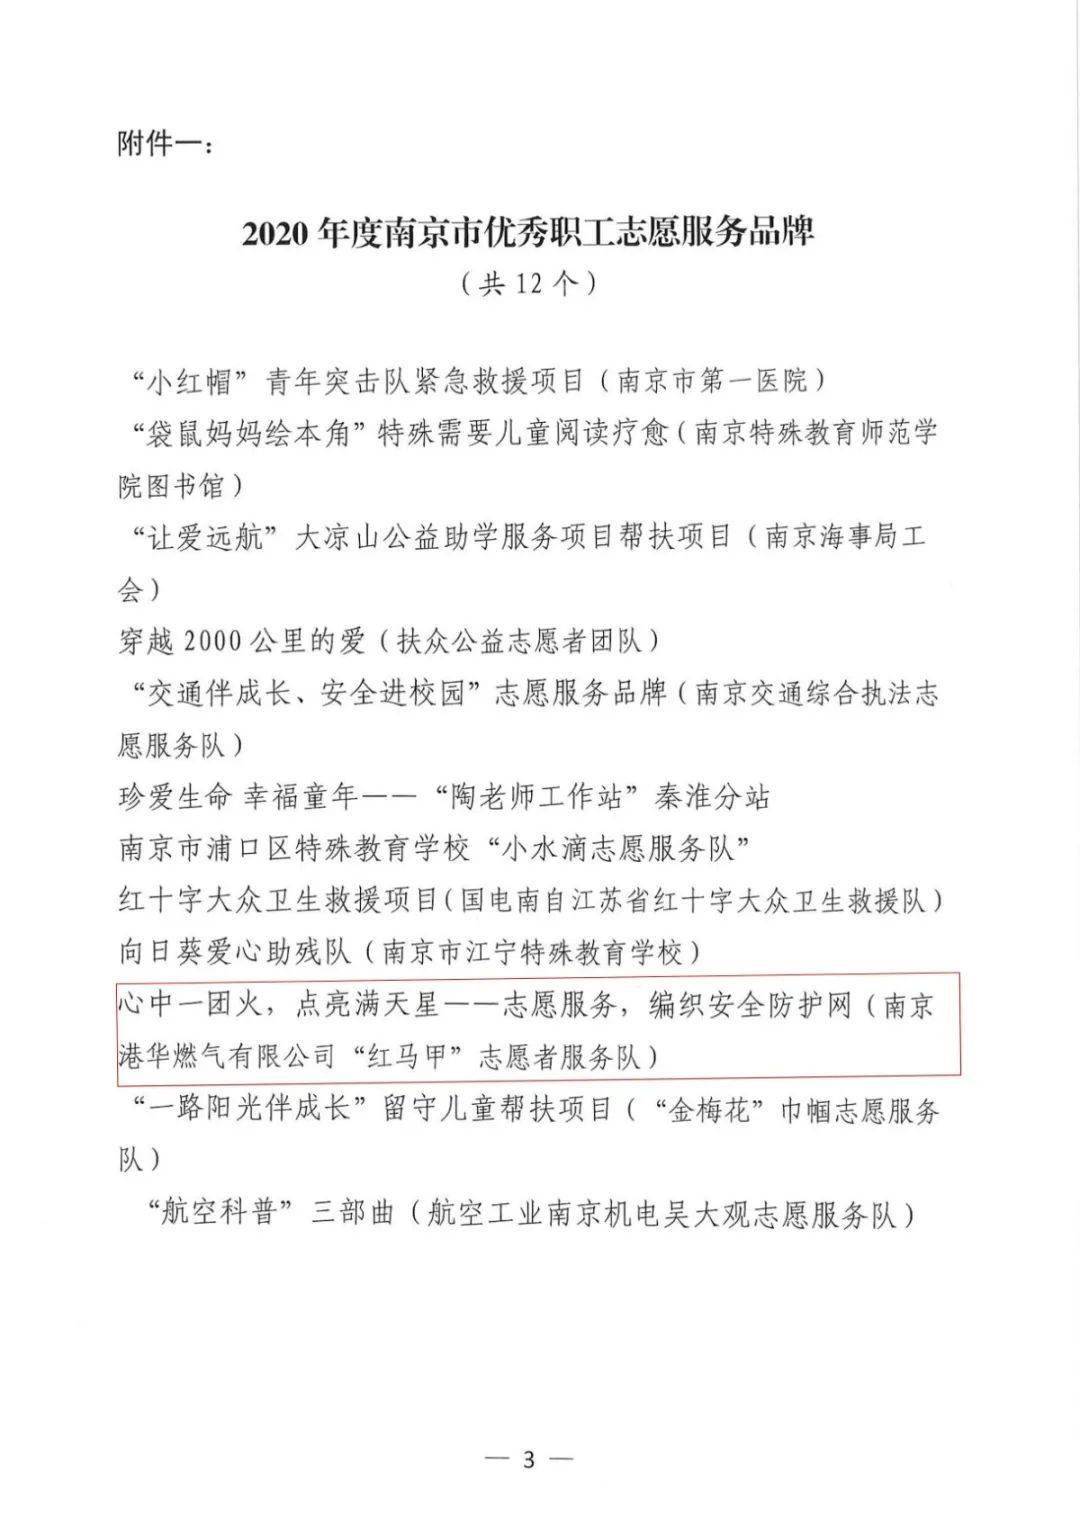 喜报南京港华燃气有限公司红马甲志愿者服务队荣获多项荣誉